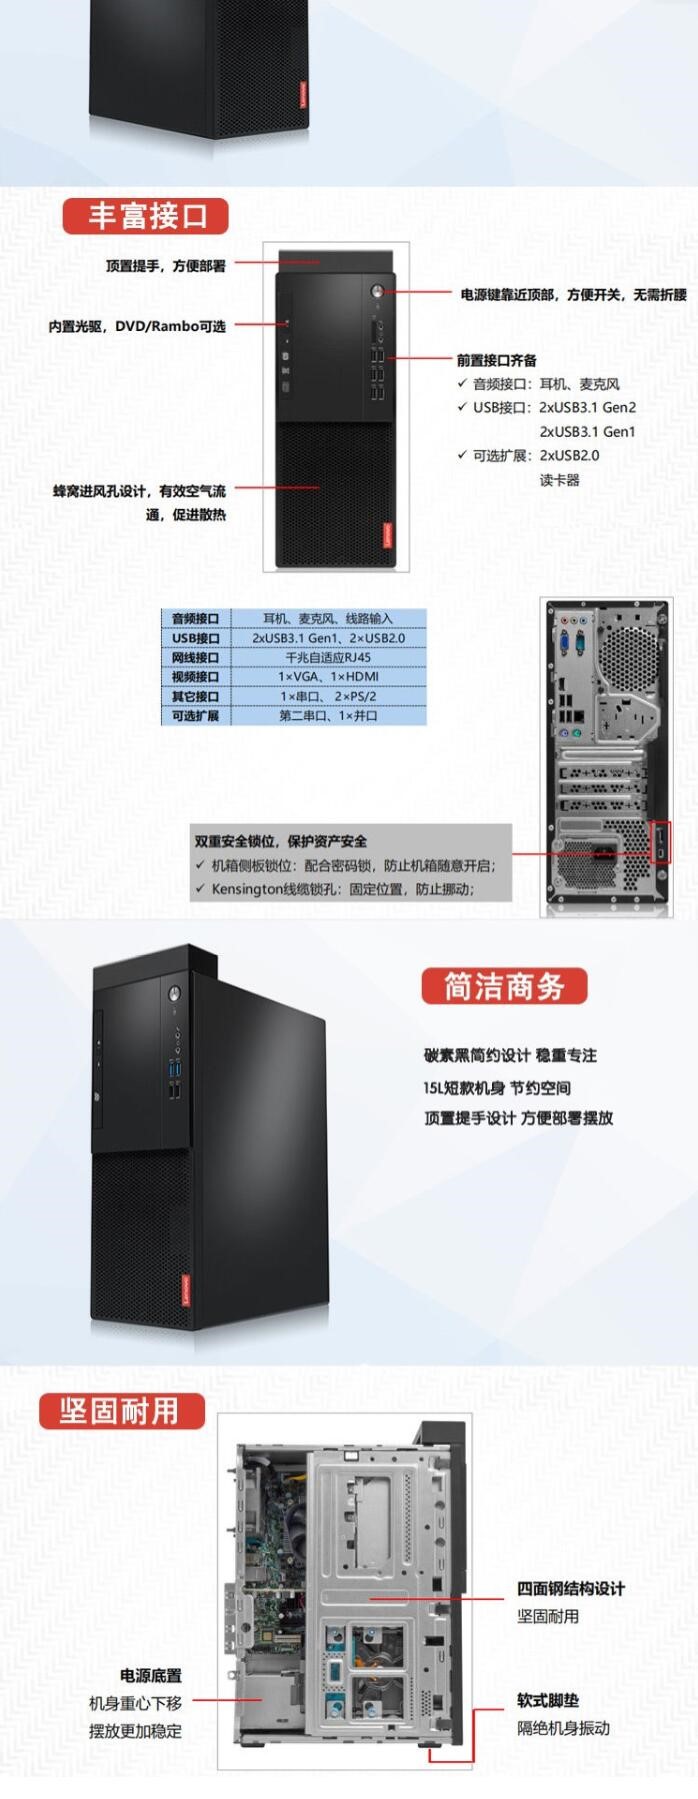   联想/Lenovo 启天M530-A028 台式整机  (图7)